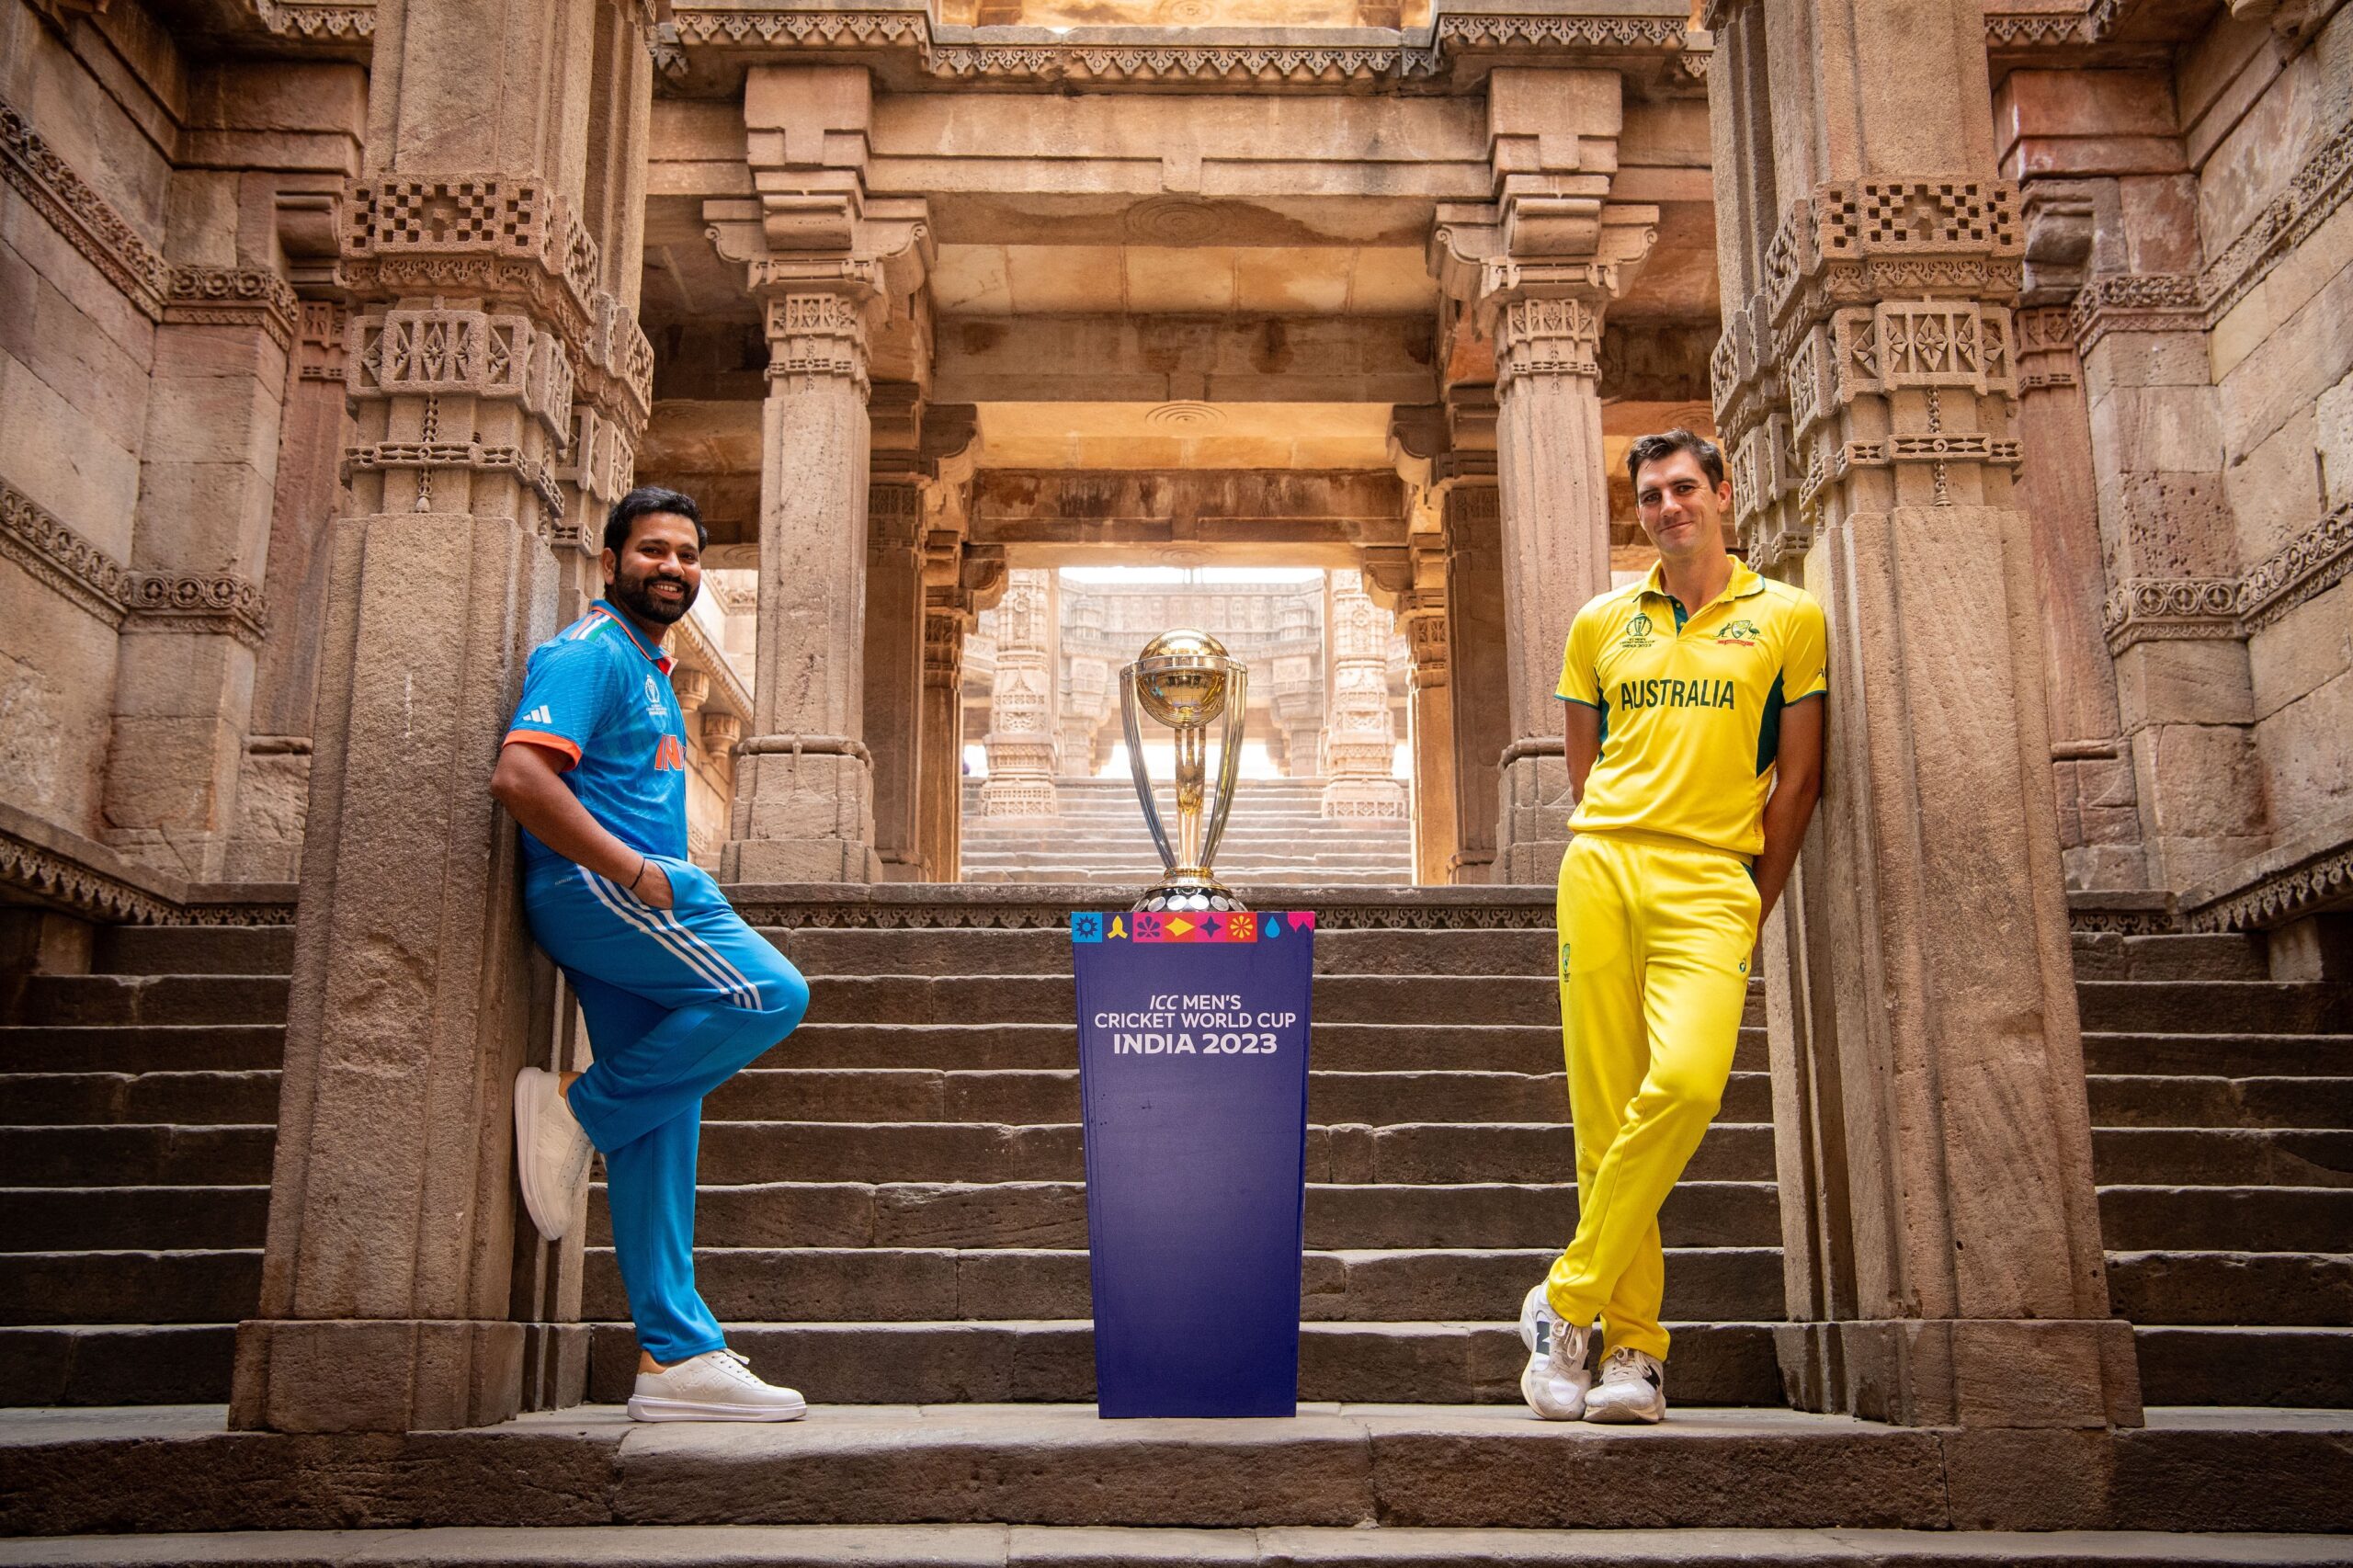 World Cup Final 2023 at Ahmedabad